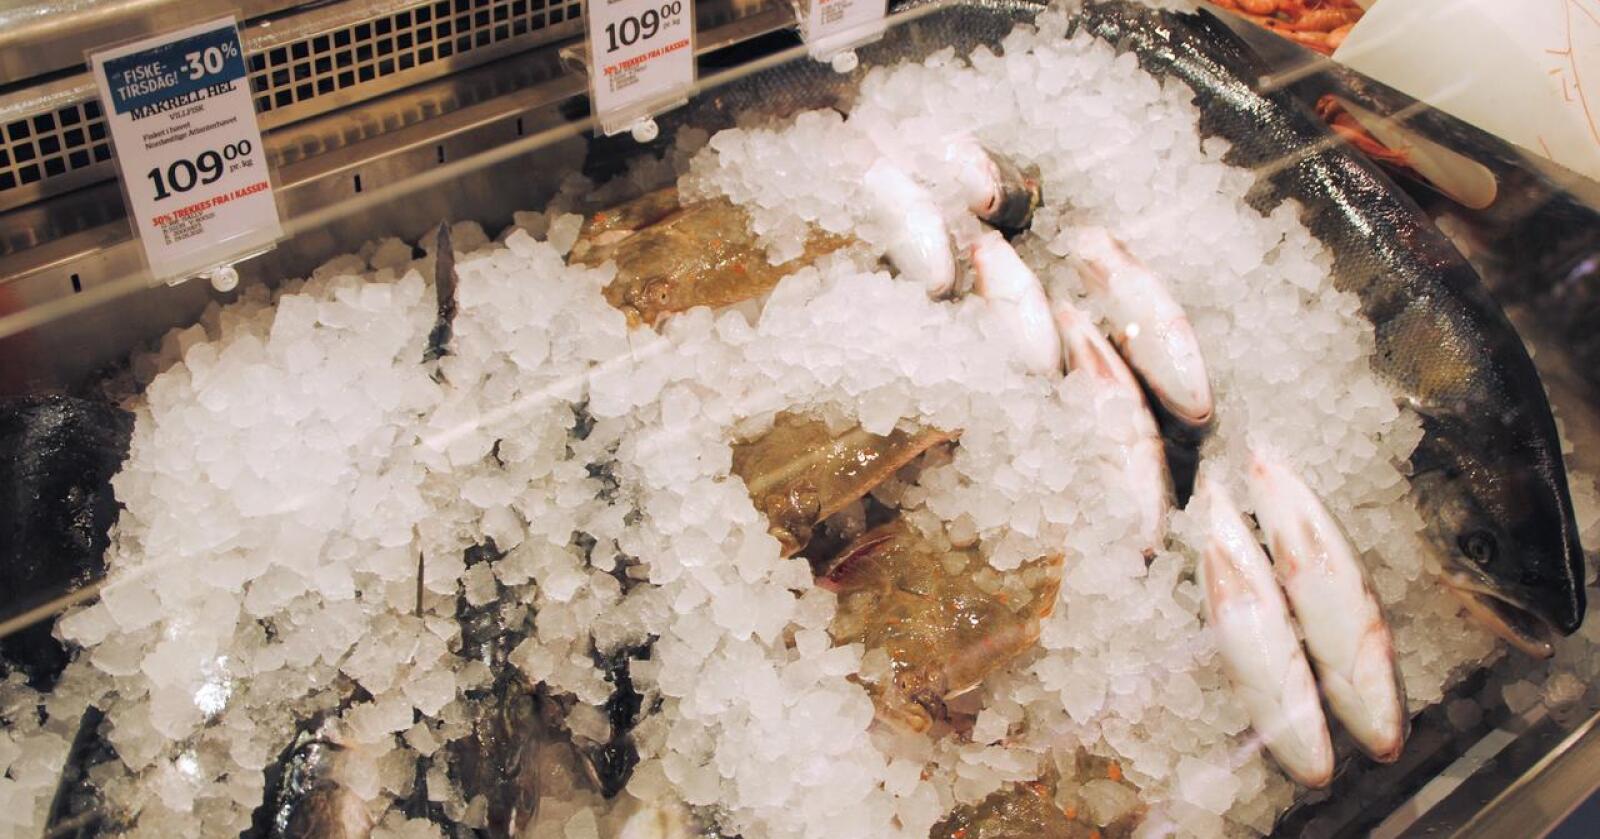 Handlevaner: For alle fiskeslag utenom sei så øker dagligvaresalget ved økt pandemi-intensitet, for kjøtt er bildet annerledes, skriver artikkelforfatterne i denne teksten. Foto: Lars Bilit Hagen